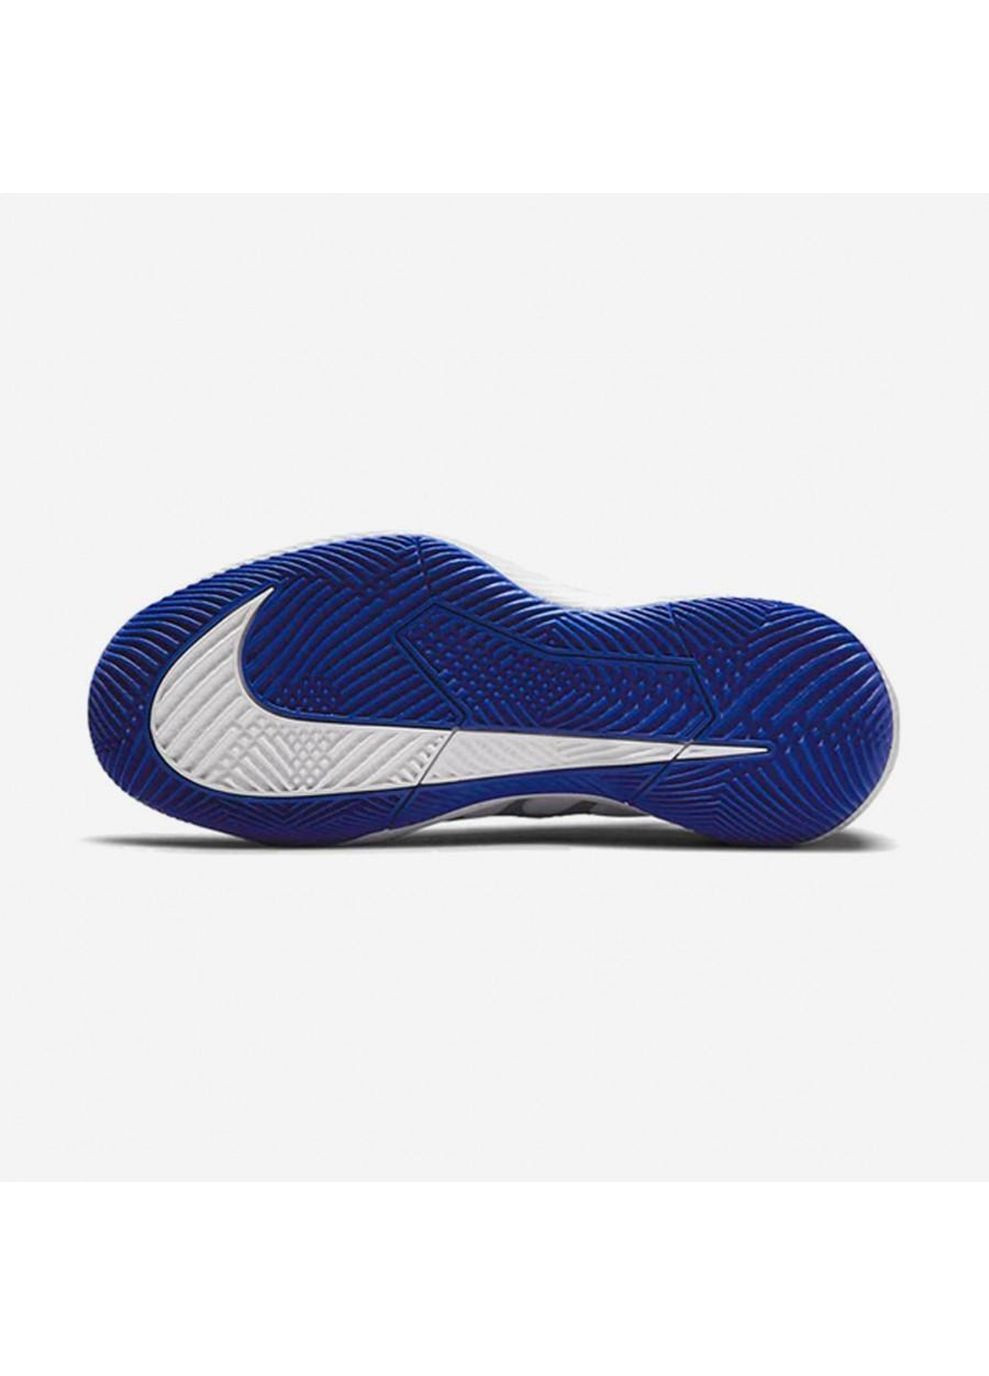 Цветные демисезонные кроссовки jr vapor pro серый синий Nike